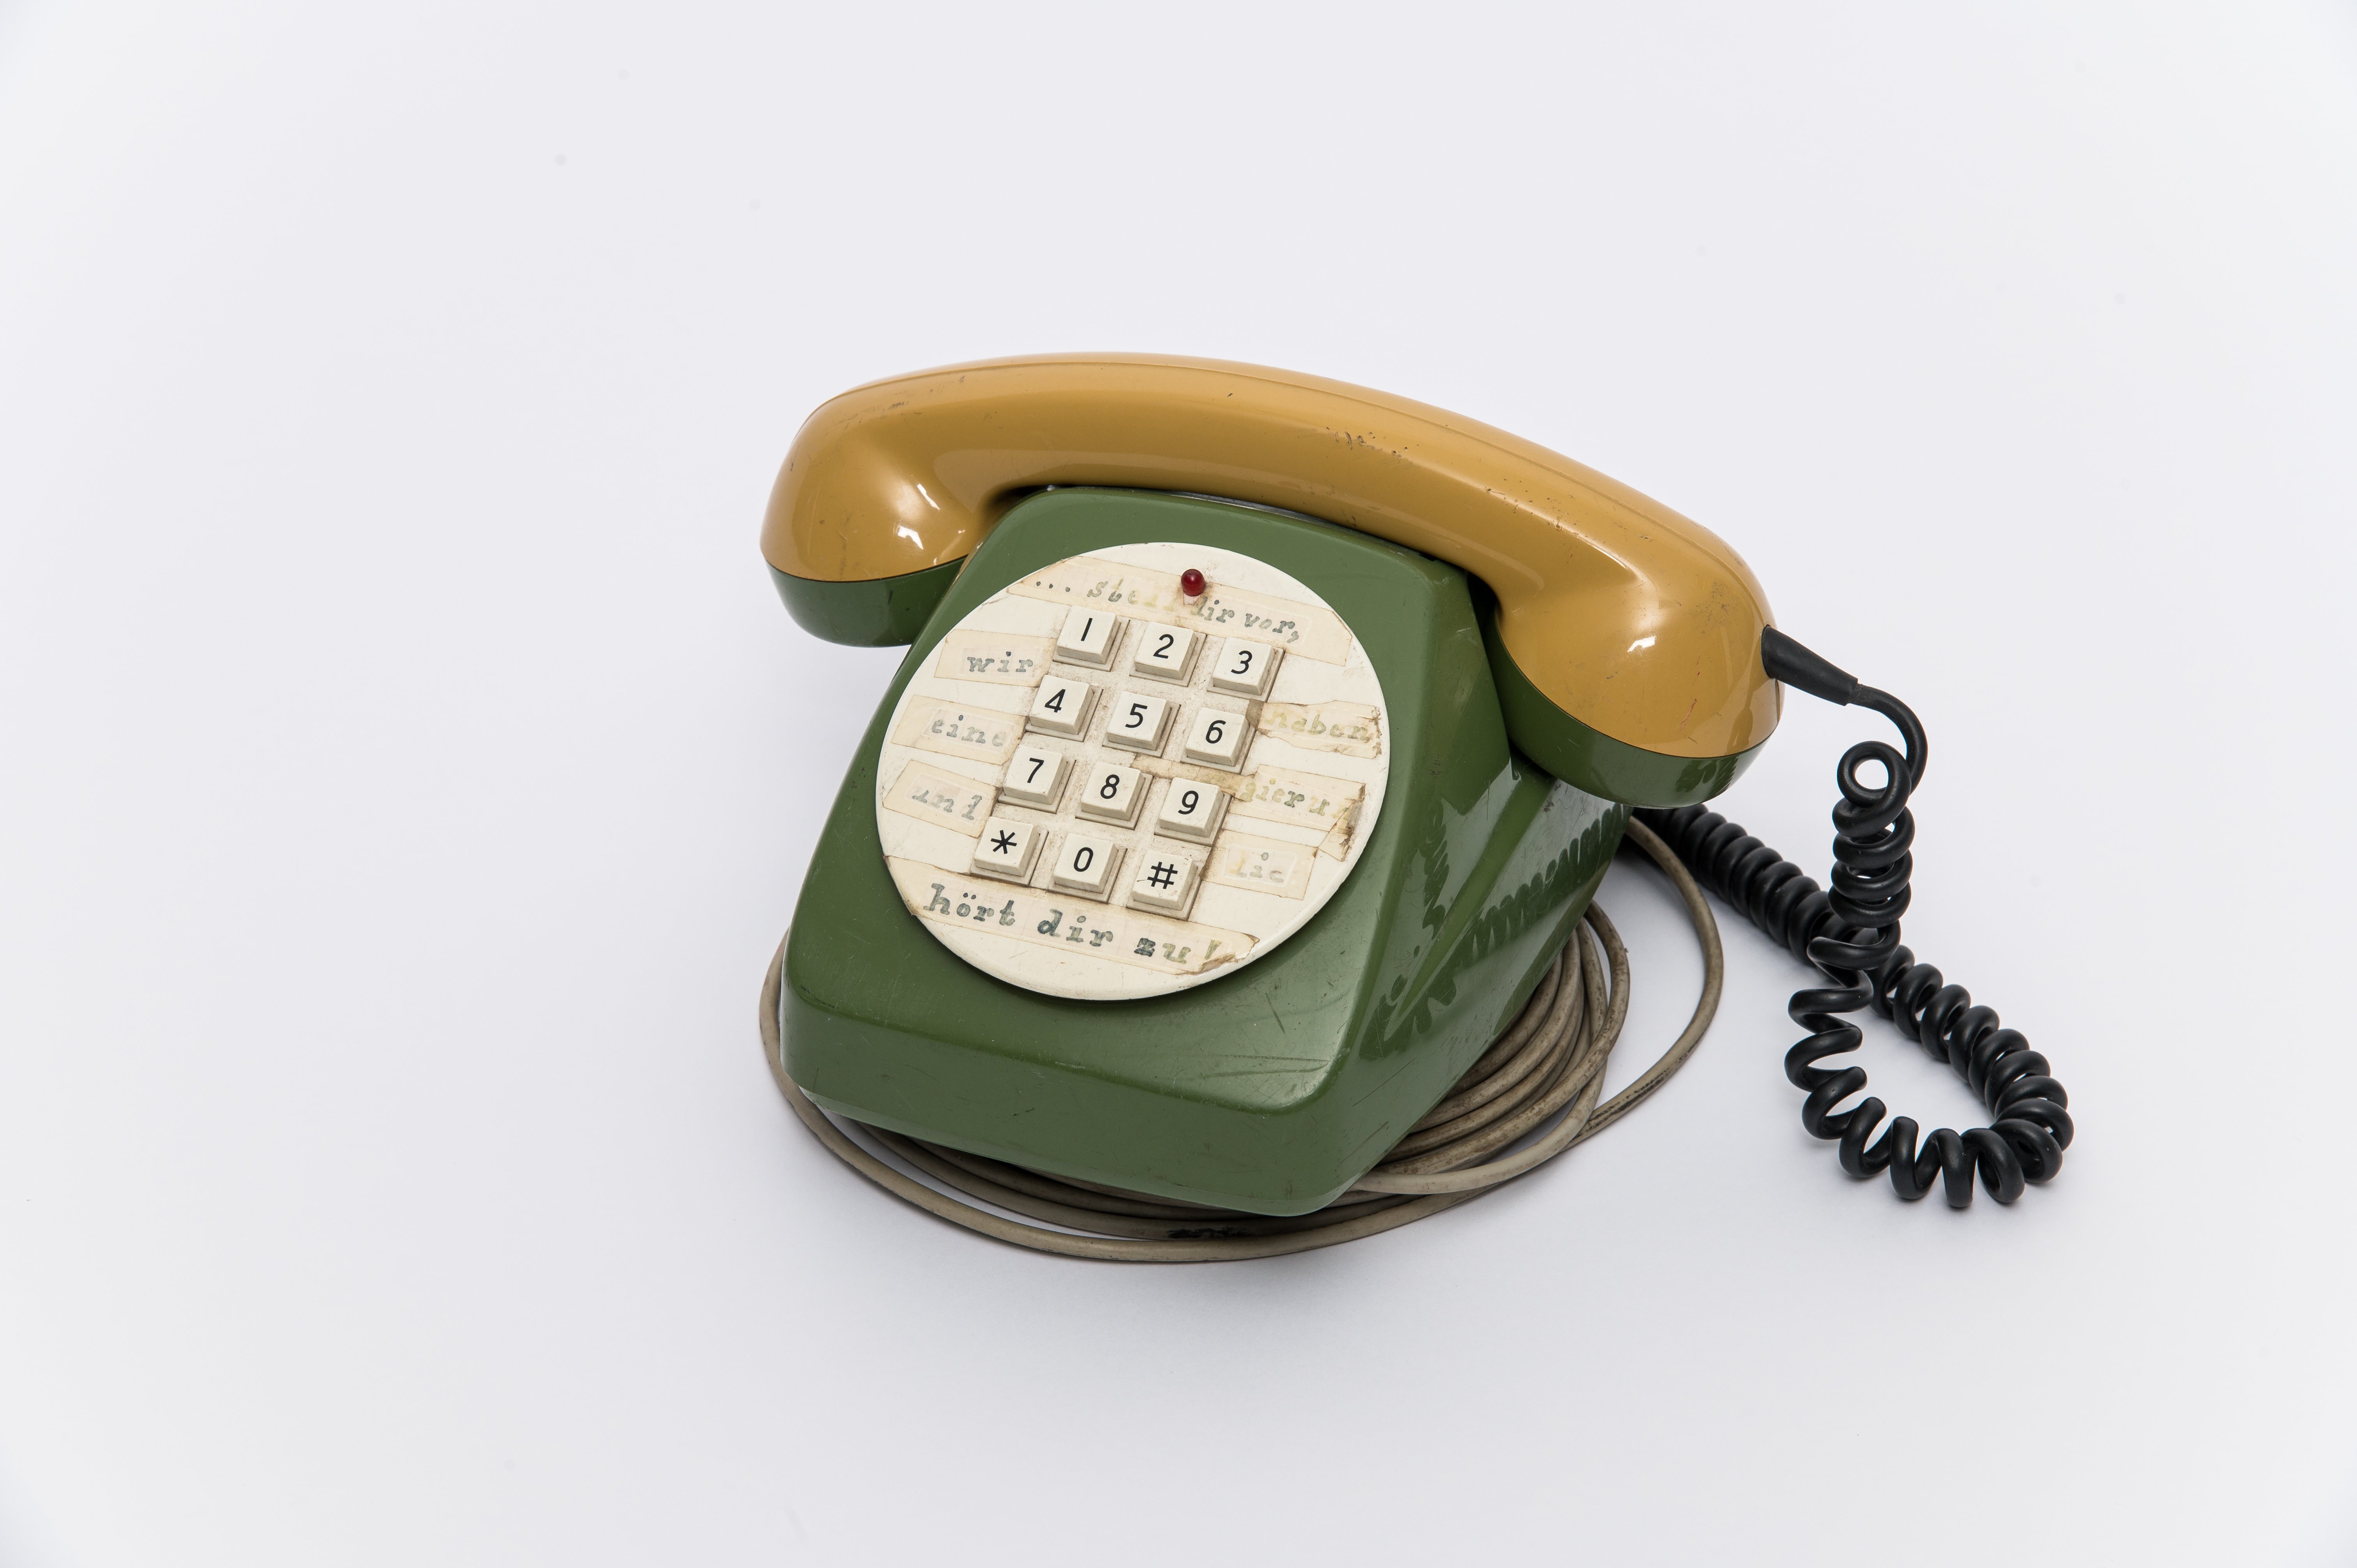 CCC-Telefon, modifiziertes Telefon der Deutschen Bundespost (Heinz Nixdorf MuseumsForum CC BY-NC-SA)